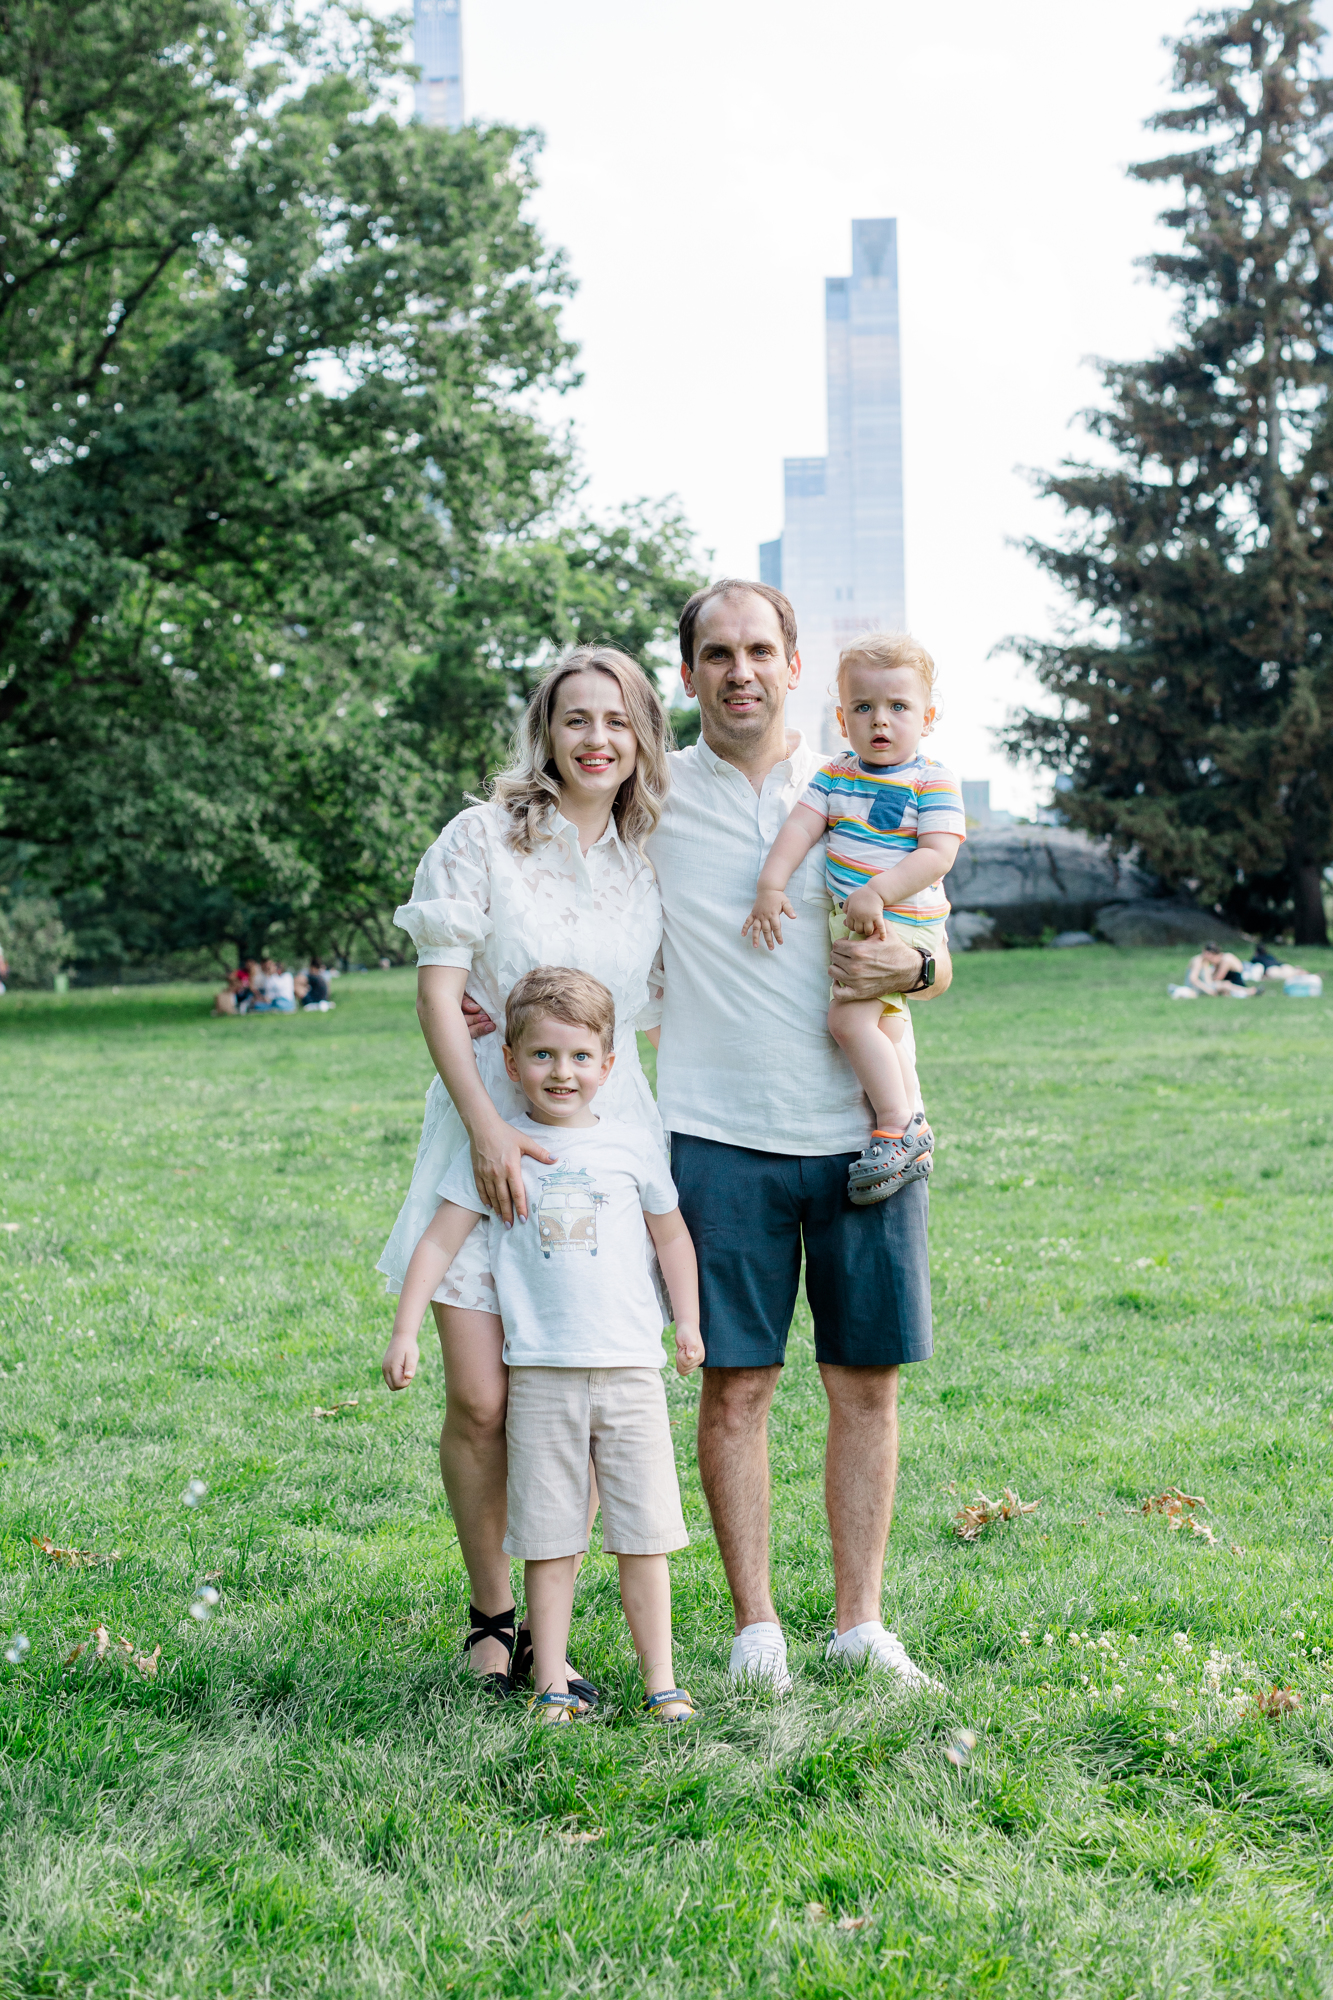 Lovely Family Photos in Central Park, NY